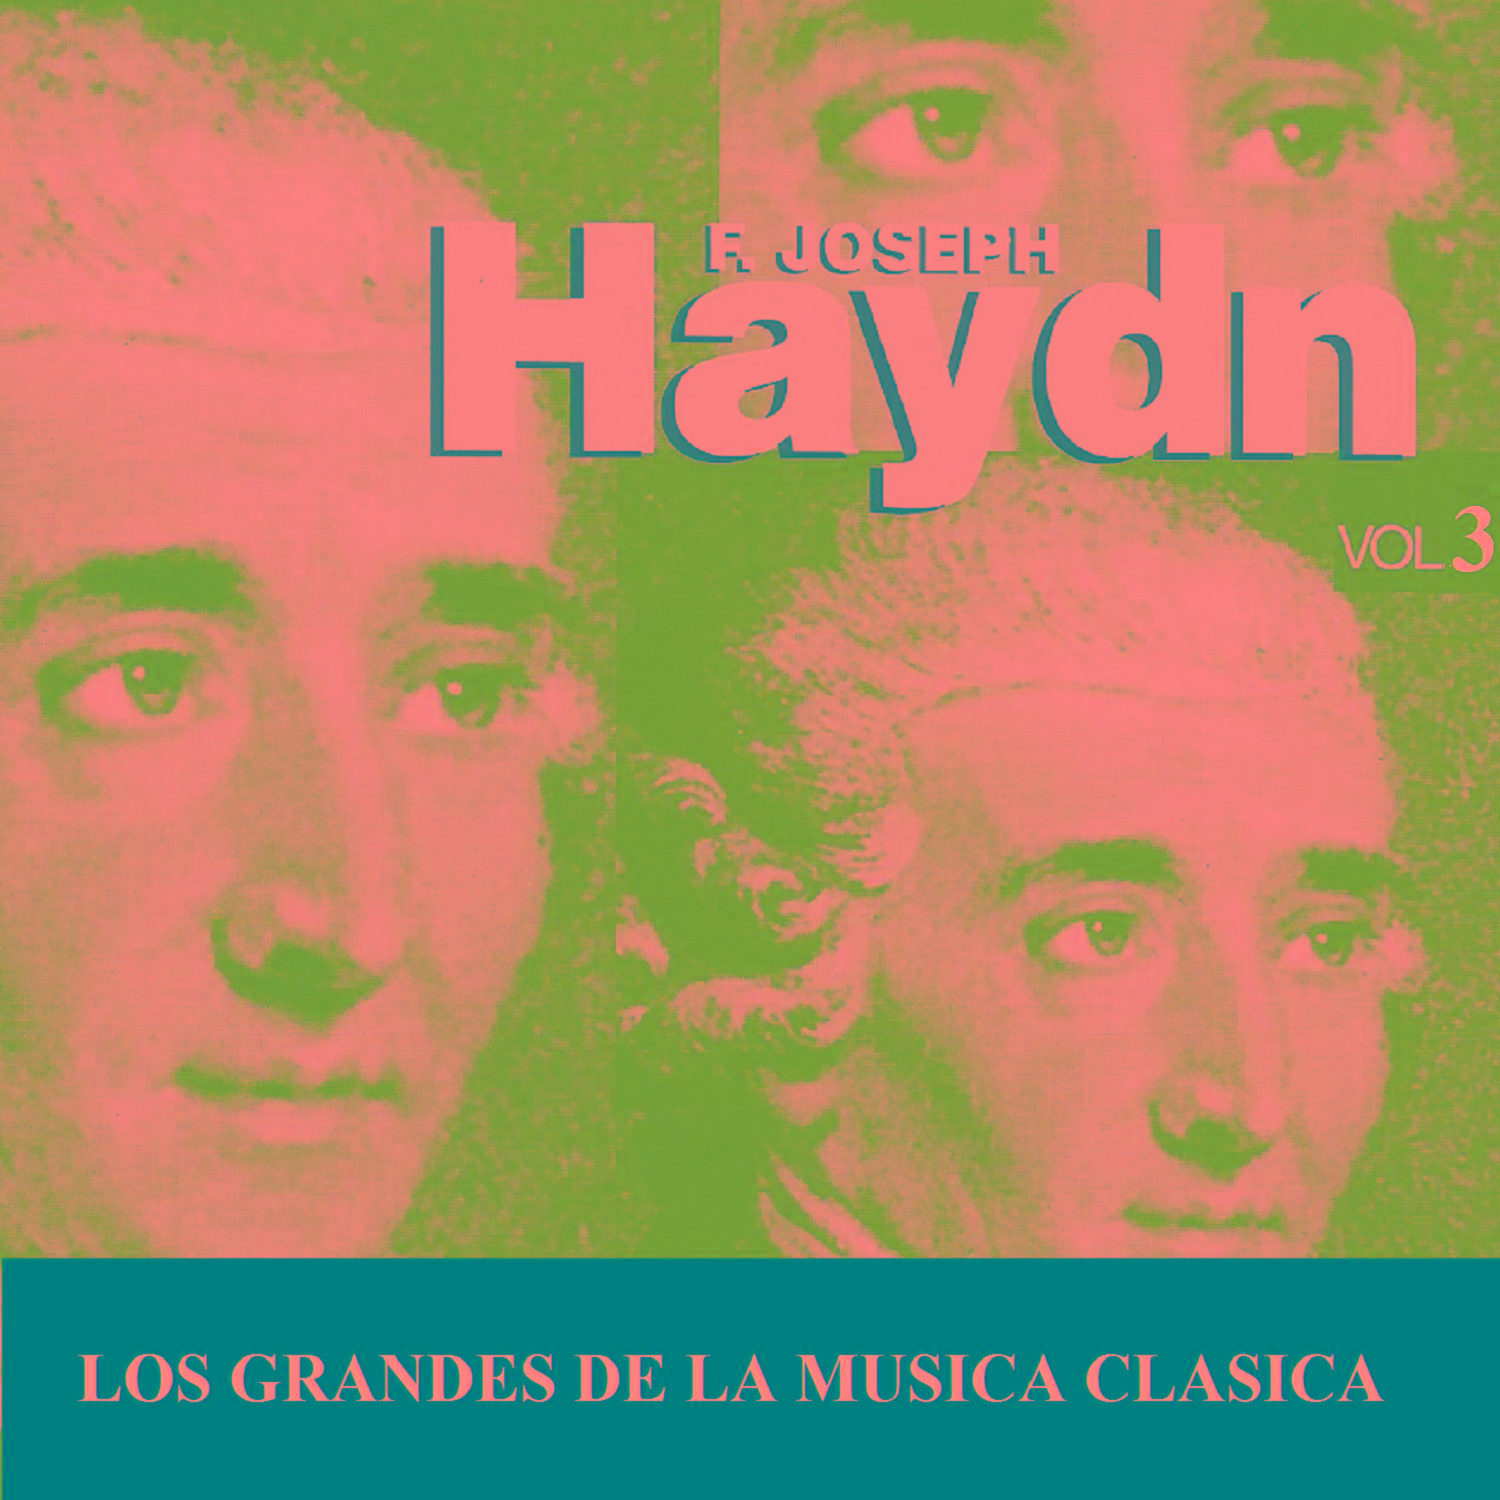 Los Grandes de la Musica Clasica - Joseph Haydn Vol. 3